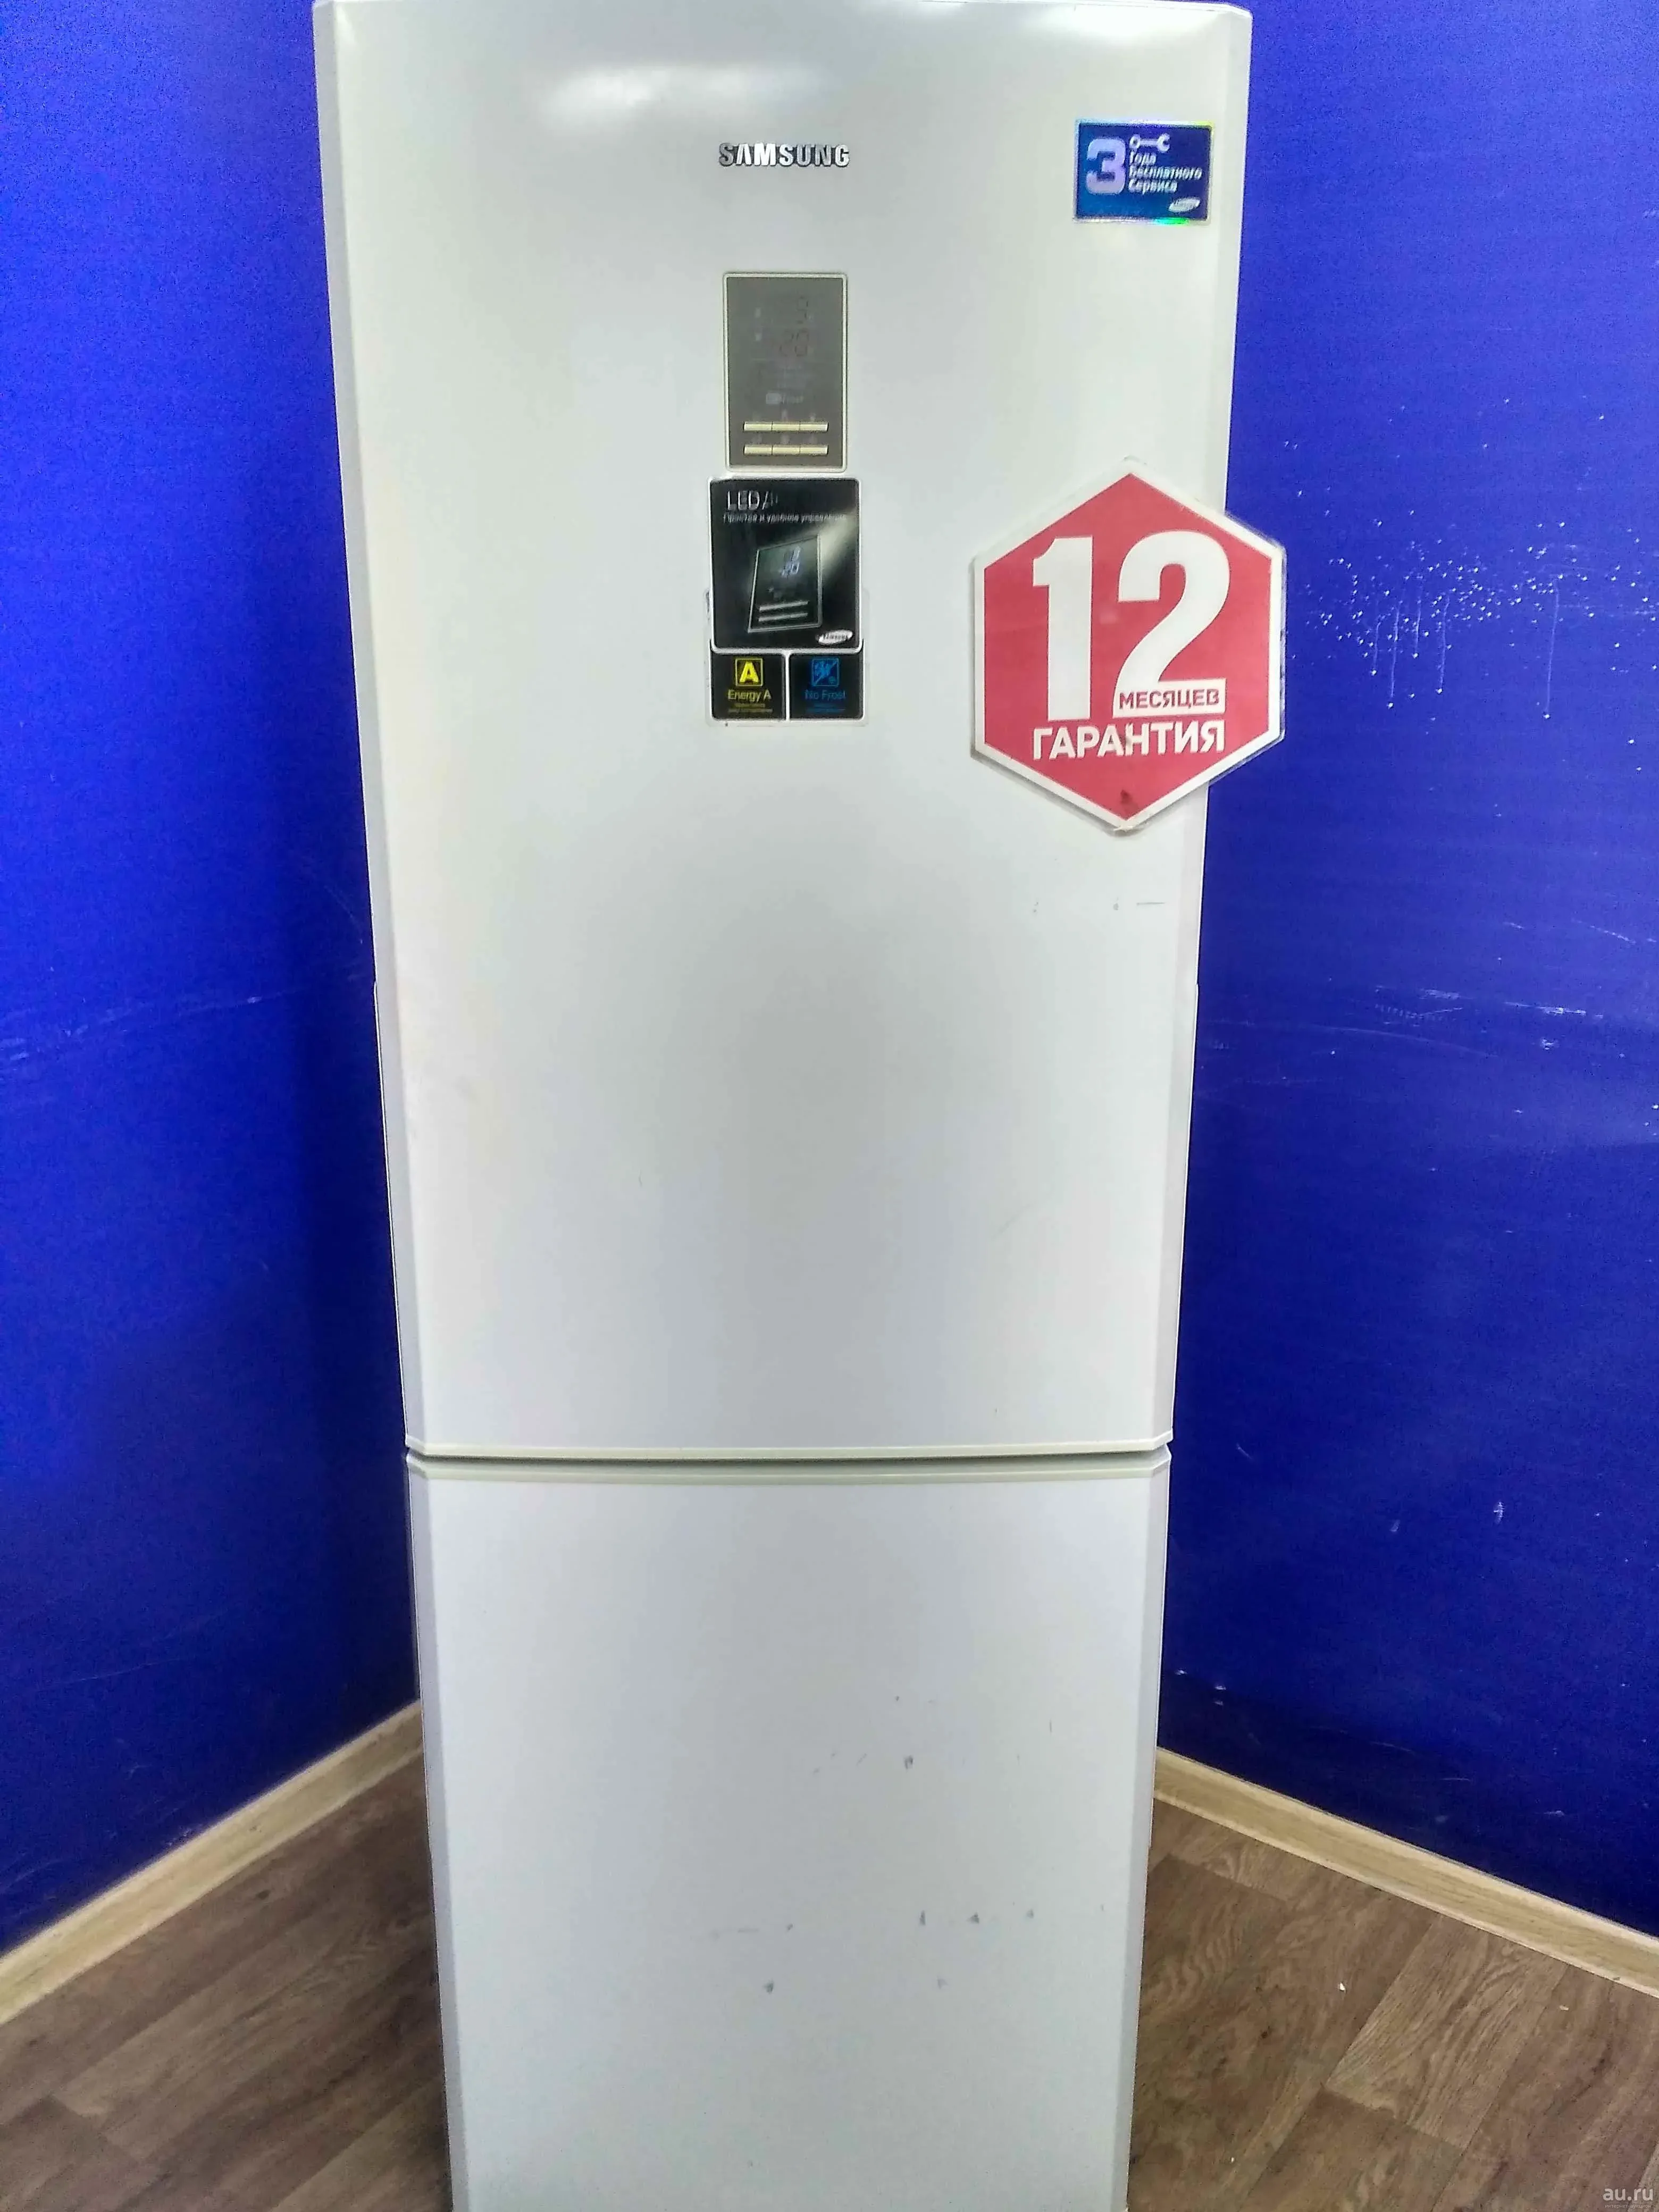 Samsung rl 34. Холодильник самсунг rl34ecsw. Samsung RL-34 ECSW. LR 34 ECSW холодильник самсунг. Холодильник самсунг rl34egms1 BWT.